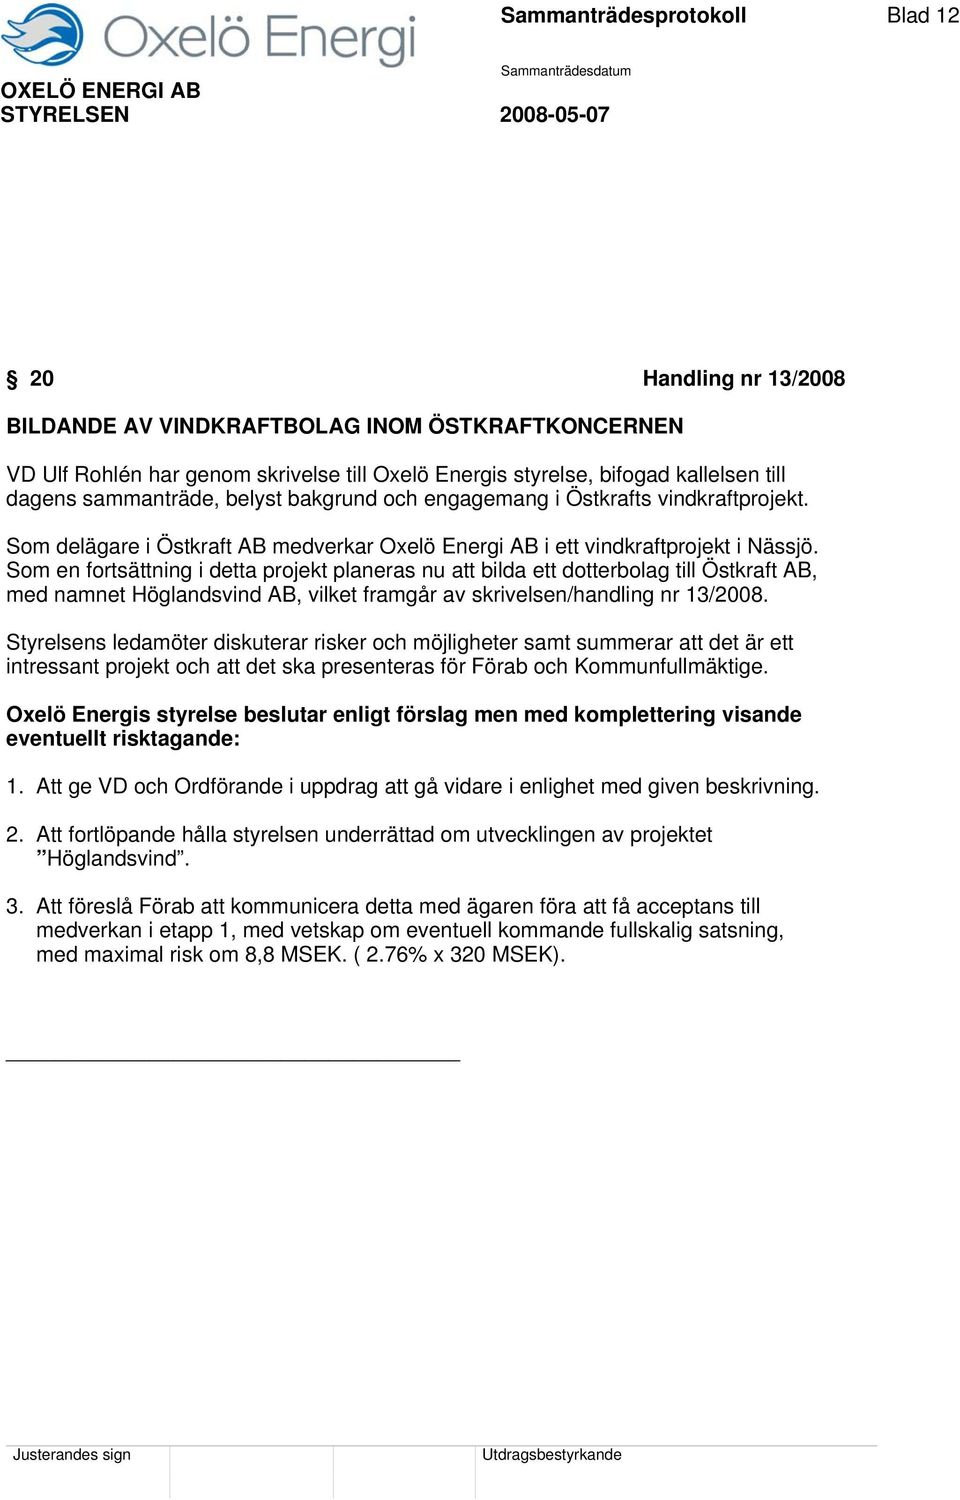 Som en fortsättning i detta projekt planeras nu att bilda ett dotterbolag till Östkraft AB, med namnet Höglandsvind AB, vilket framgår av skrivelsen/handling nr 13/2008.